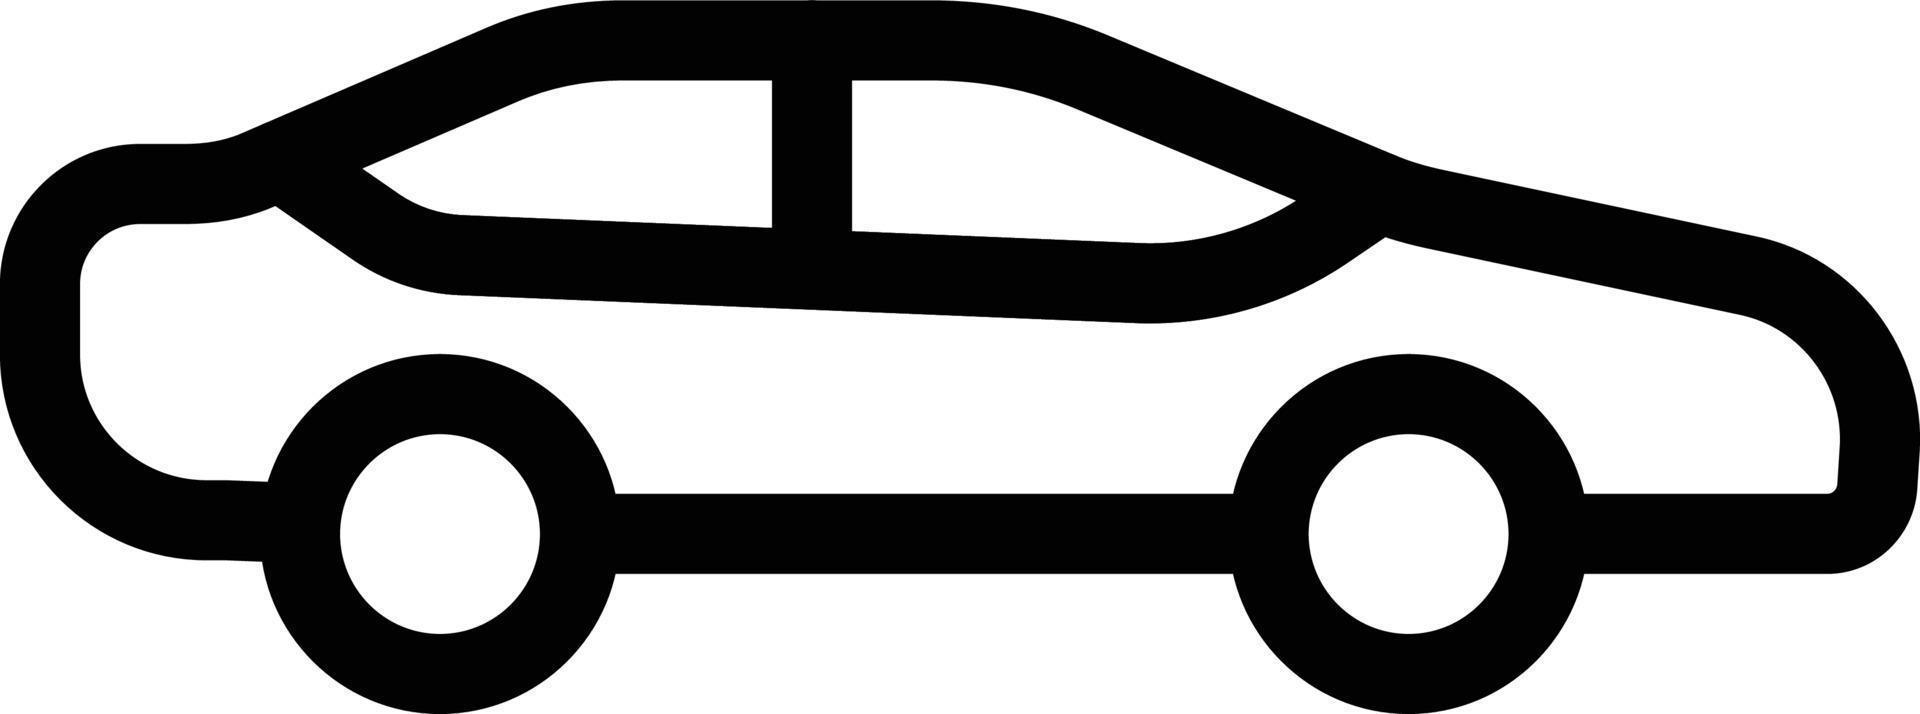 illustrazione vettoriale del veicolo su uno sfondo simboli di qualità premium. icone vettoriali per il concetto e la progettazione grafica.